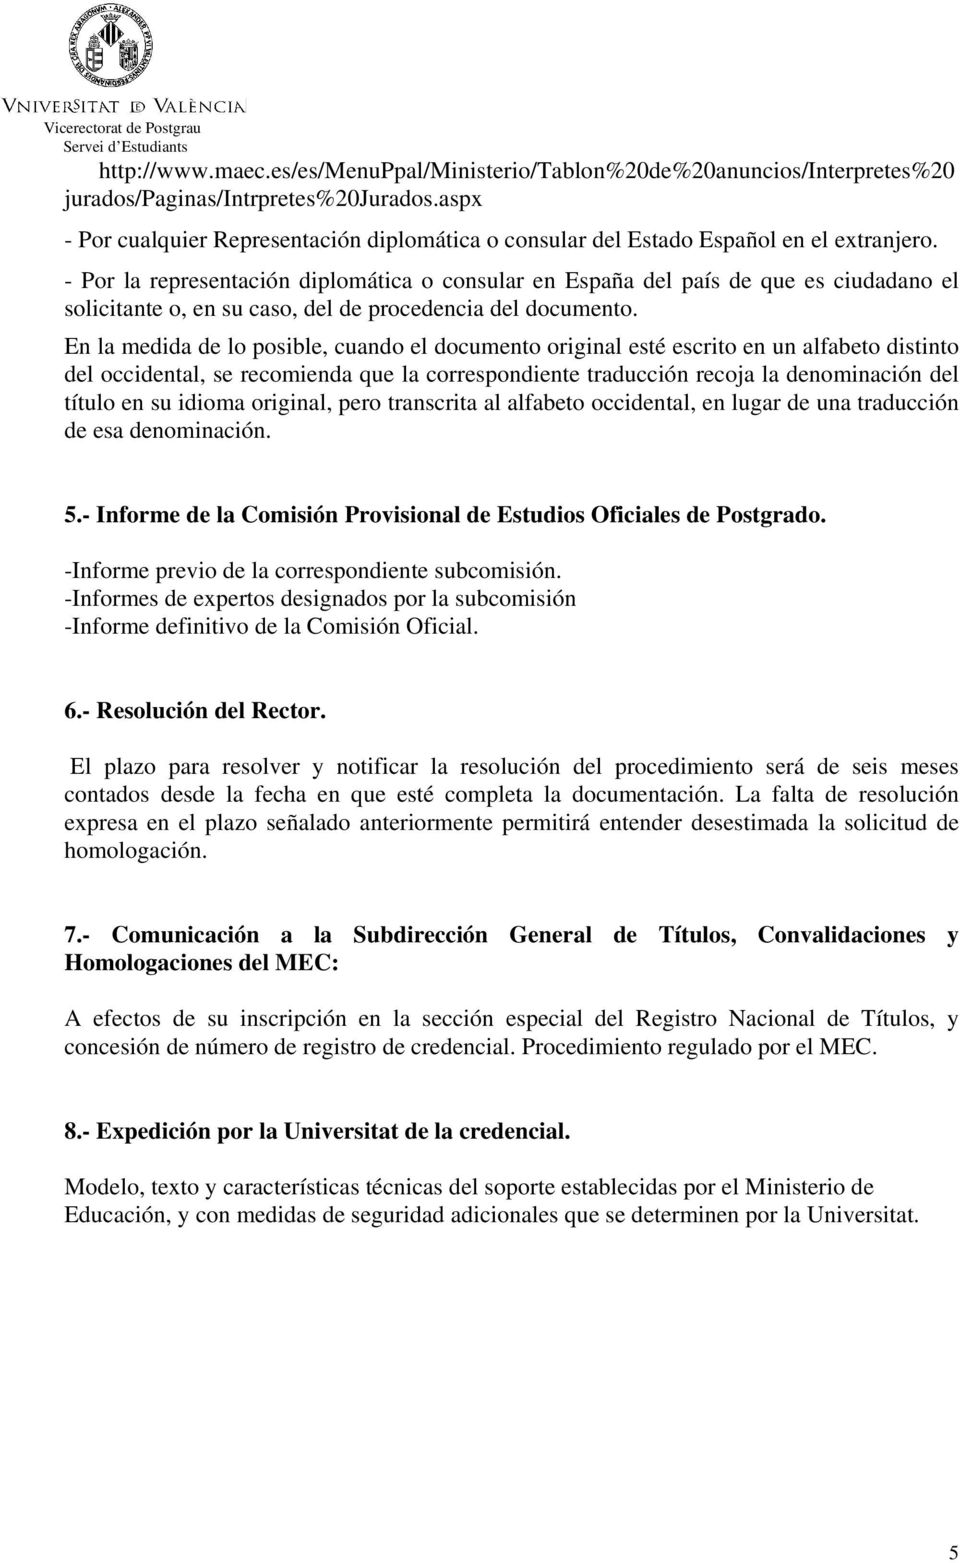 - Por la representación diplomática o consular en España del país de que es ciudadano el solicitante o, en su caso, del de procedencia del documento.